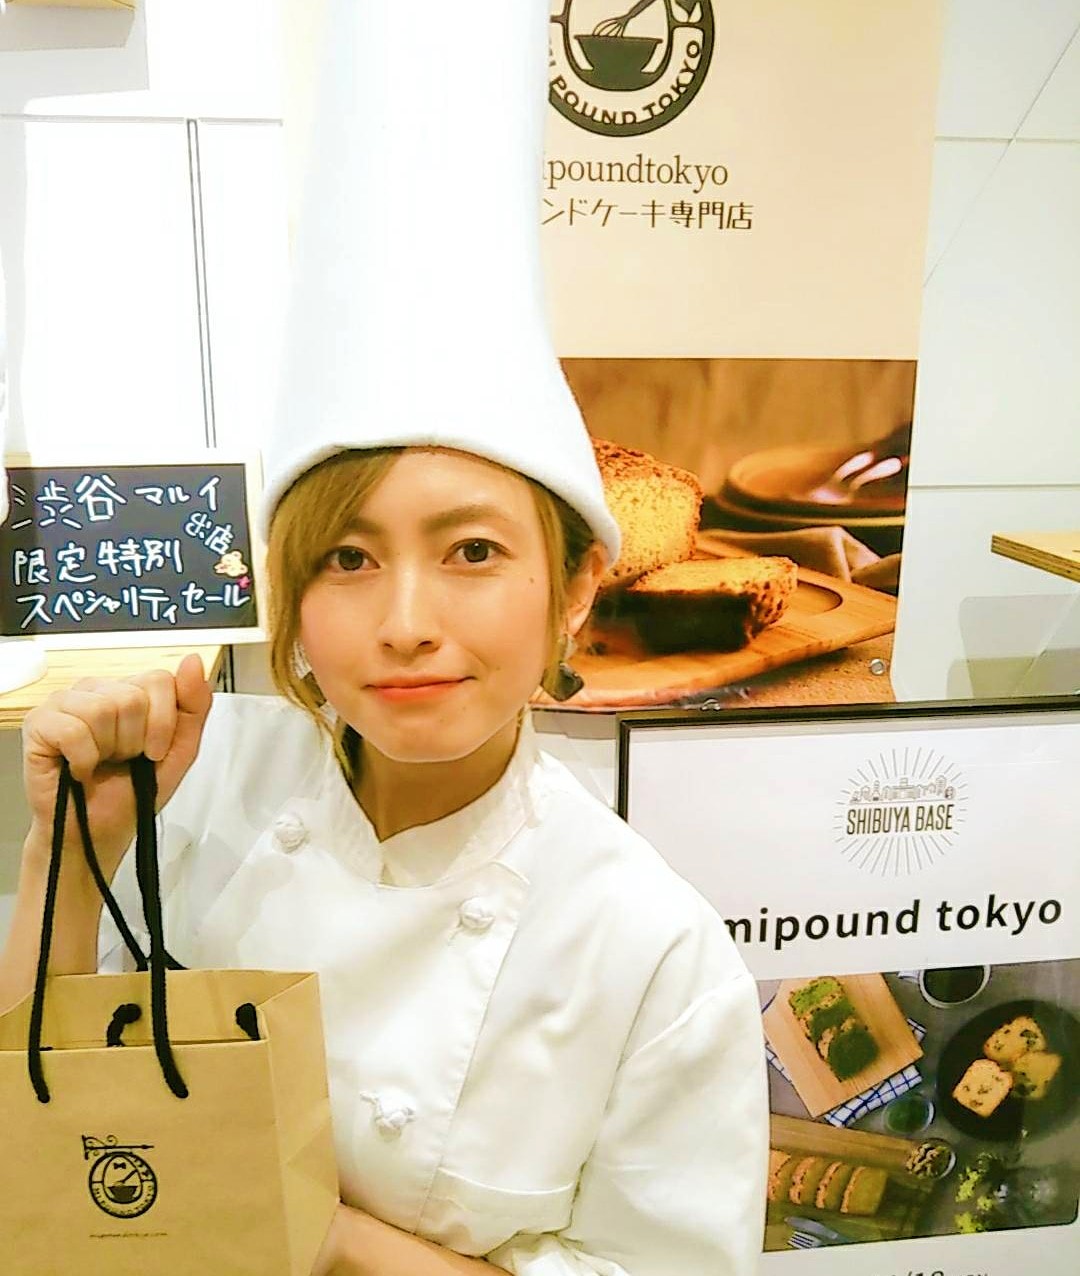 日本一長いコック帽のケーキ屋さん ショッピングモール初出店の様子 なぜ長い コック帽の理由 パウンドケーキ専門店 Mipoundtokyo